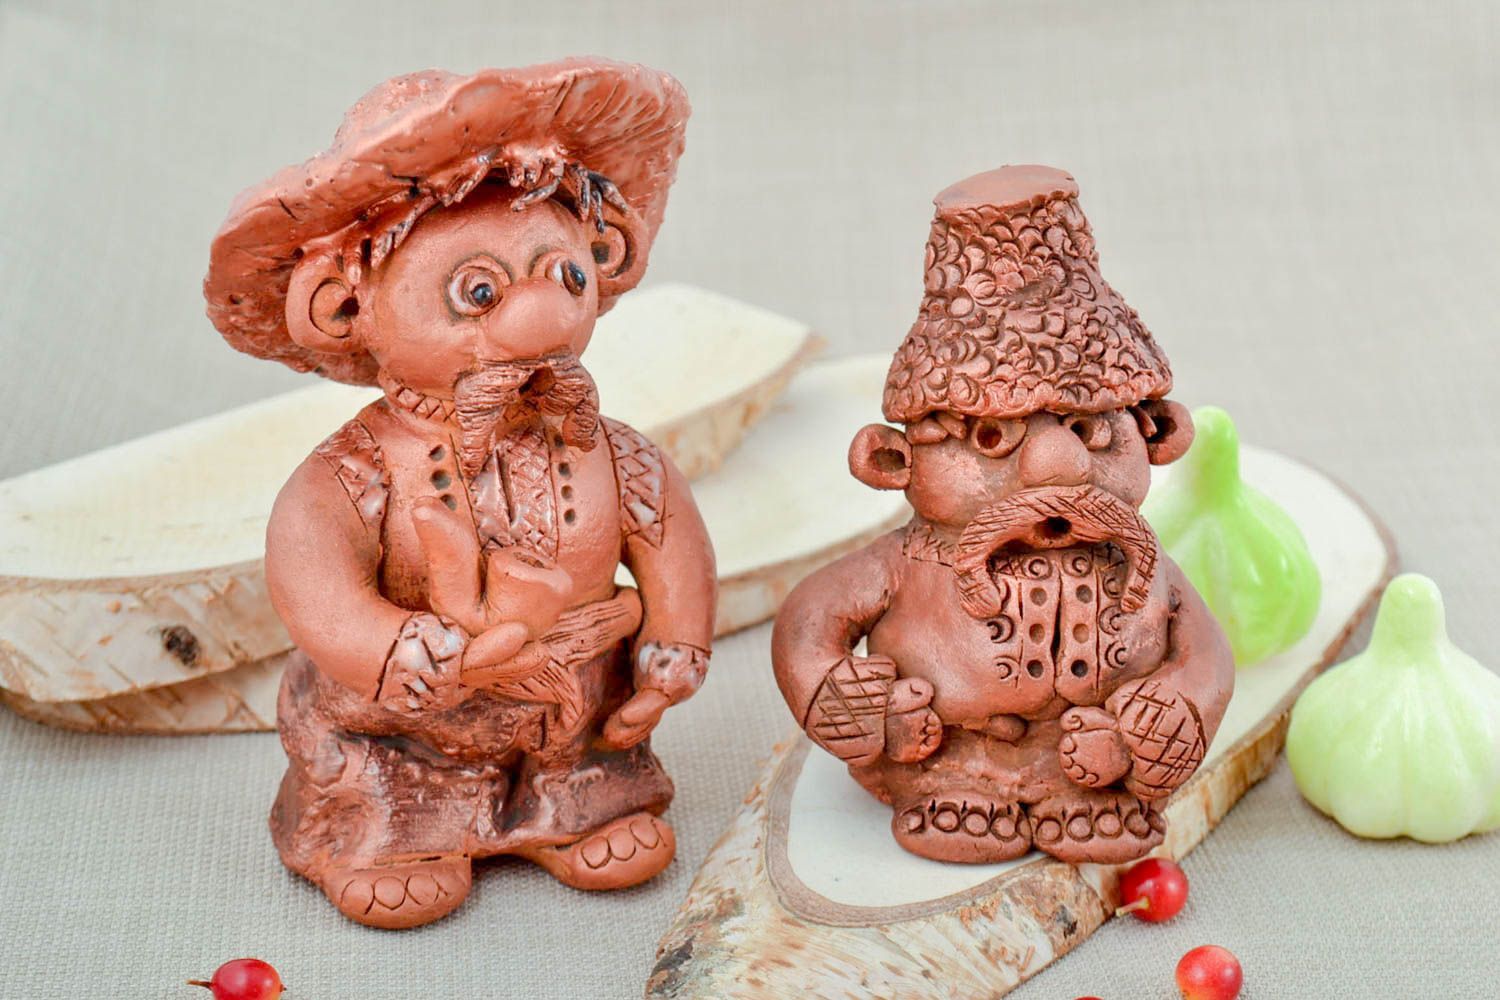 Ceramic figurines homemade home decor miniature figurines souvenir ideas photo 1